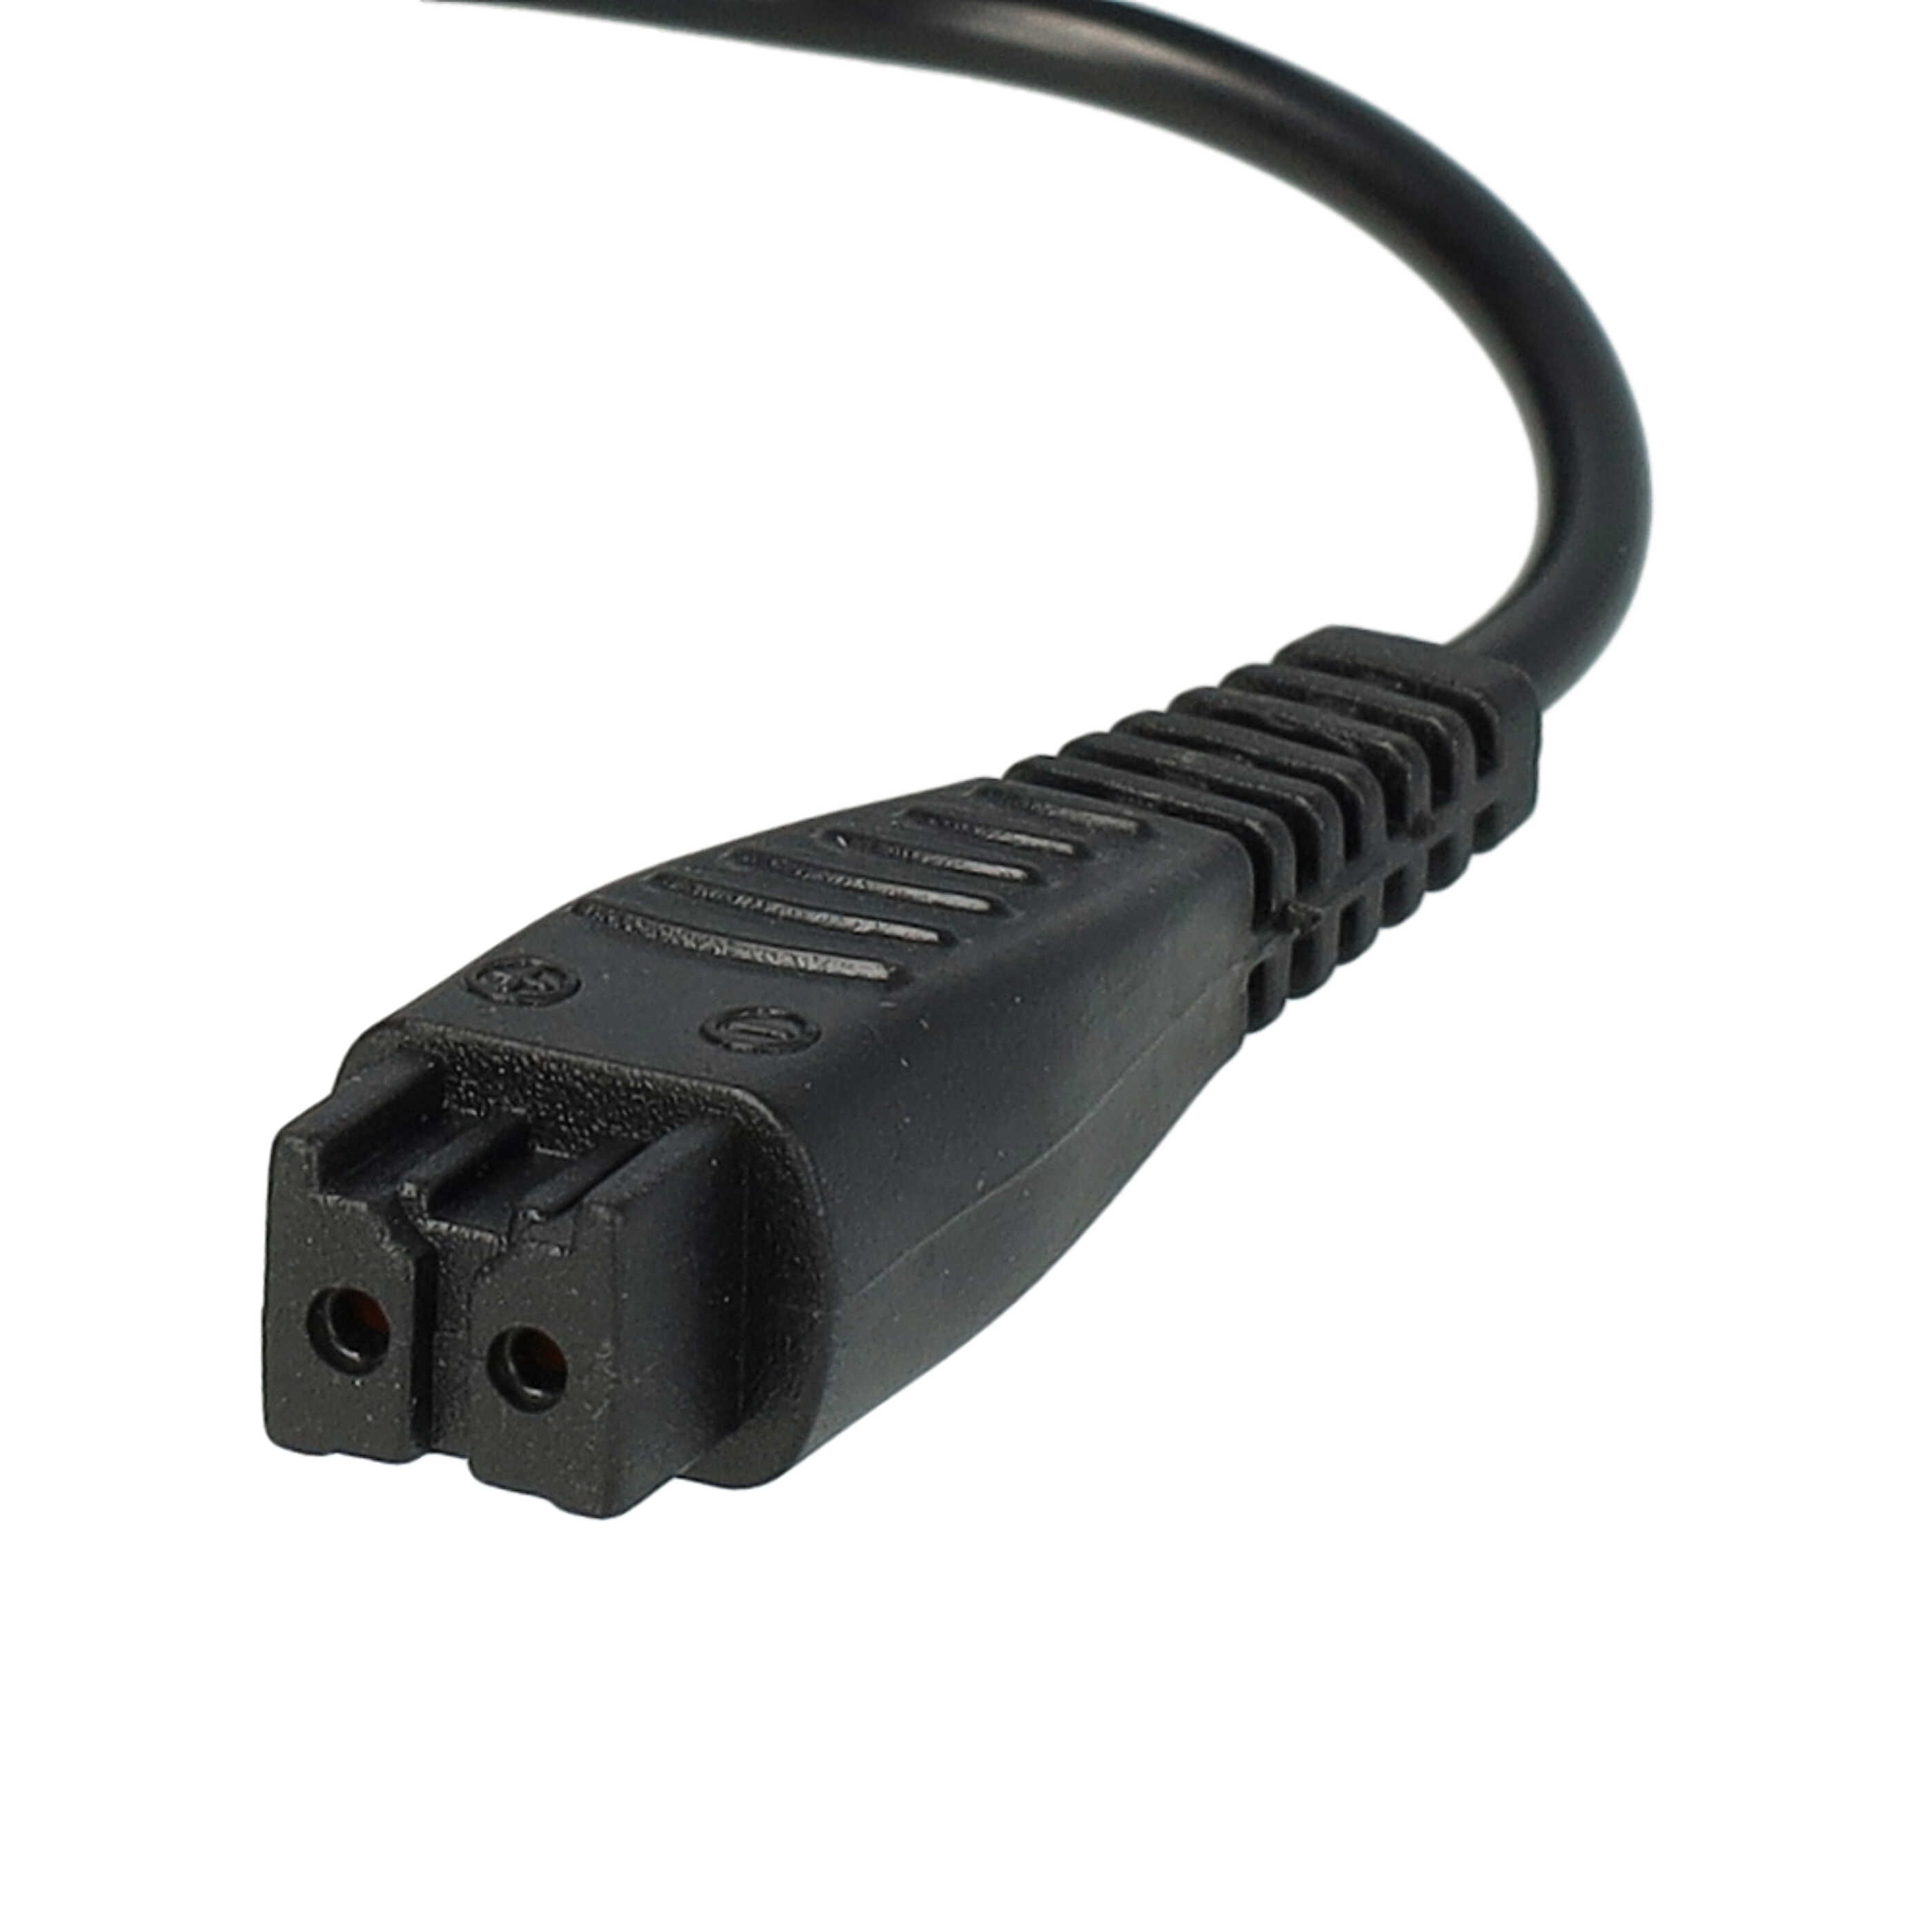 Kabel do ładowania golarki elektrycznej Panasonic zamiennik Panasonic RE7-59, RE7-68, RE7-51, RE7-40 - 120 cm